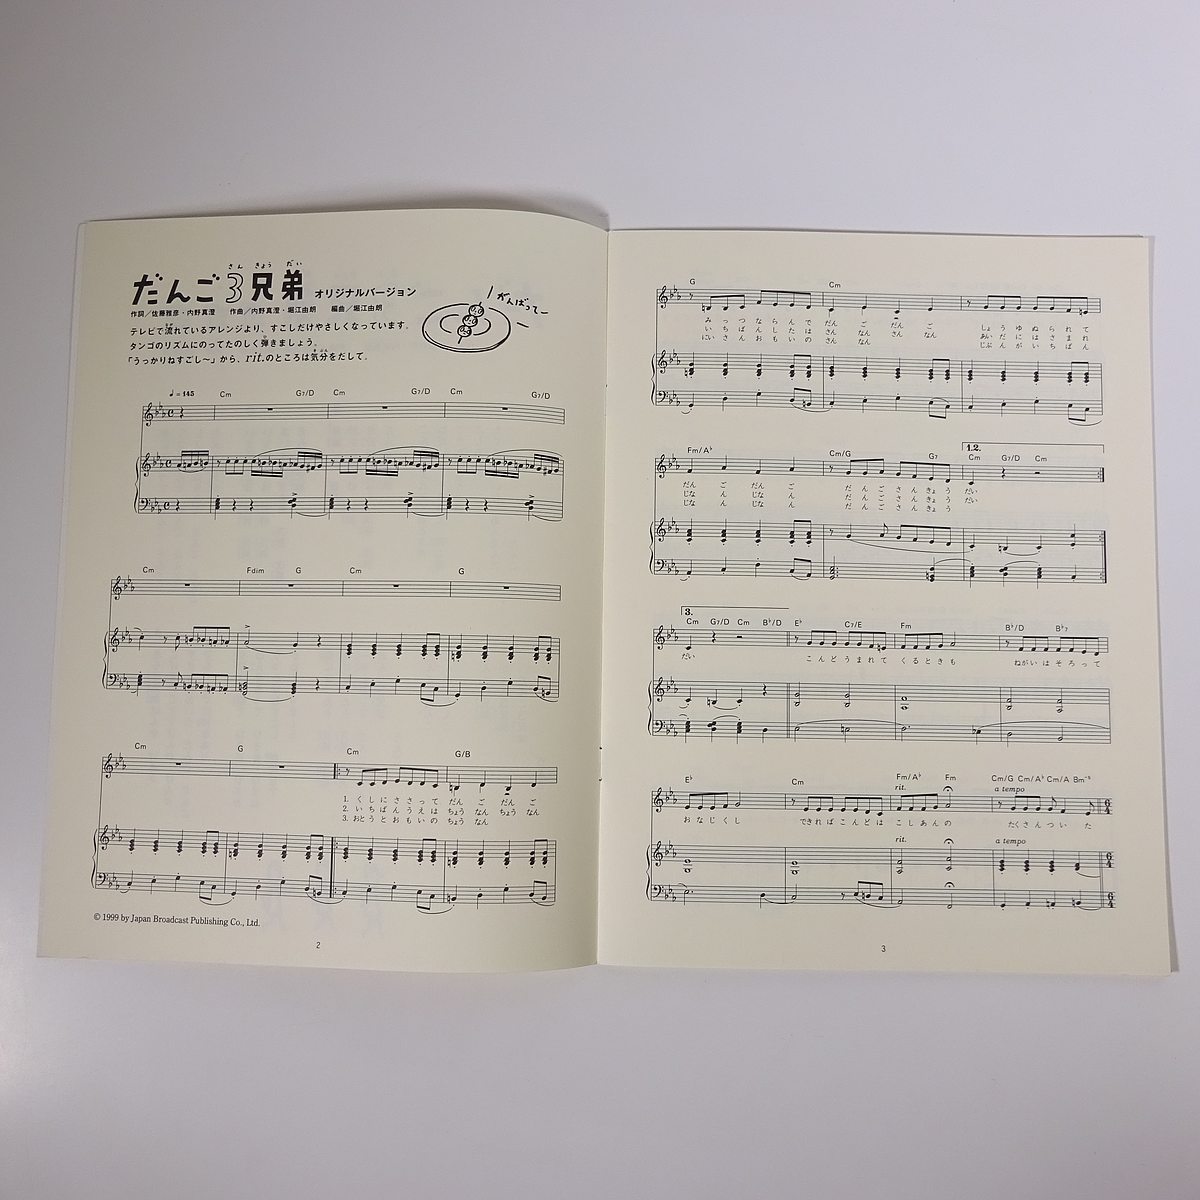 楽譜 だんご3兄弟の楽譜 Nhkおかあさんといっしょ Nhk出版 1999 大型本 音楽 ピアノ 楽譜 売買されたオークション情報 Yahooの商品情報をアーカイブ公開 オークファン Aucfan Com